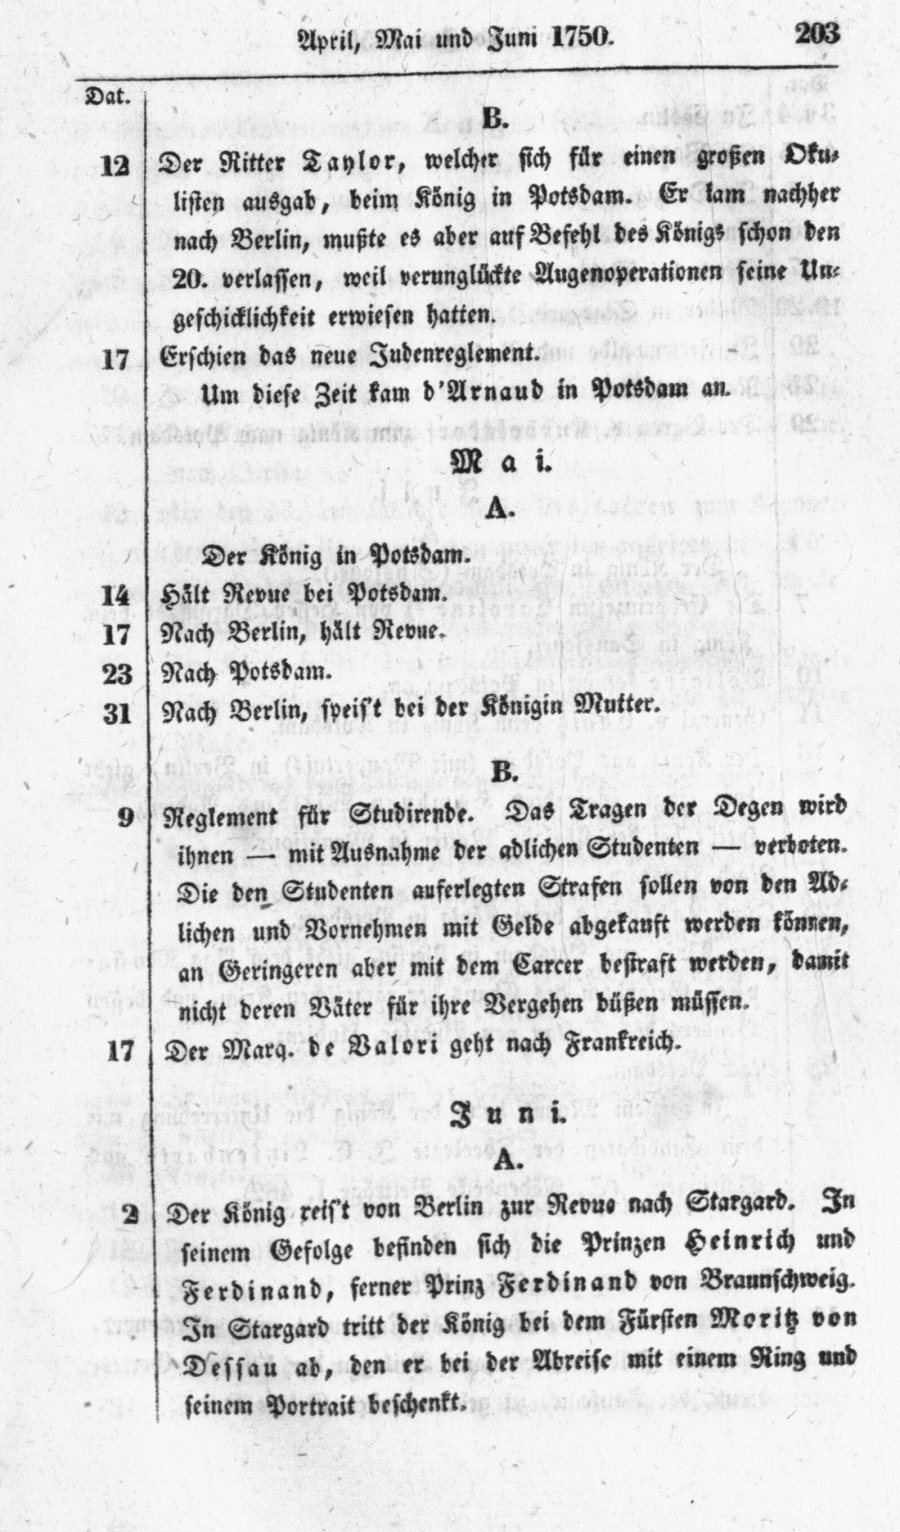 S. 203, Obj. 3